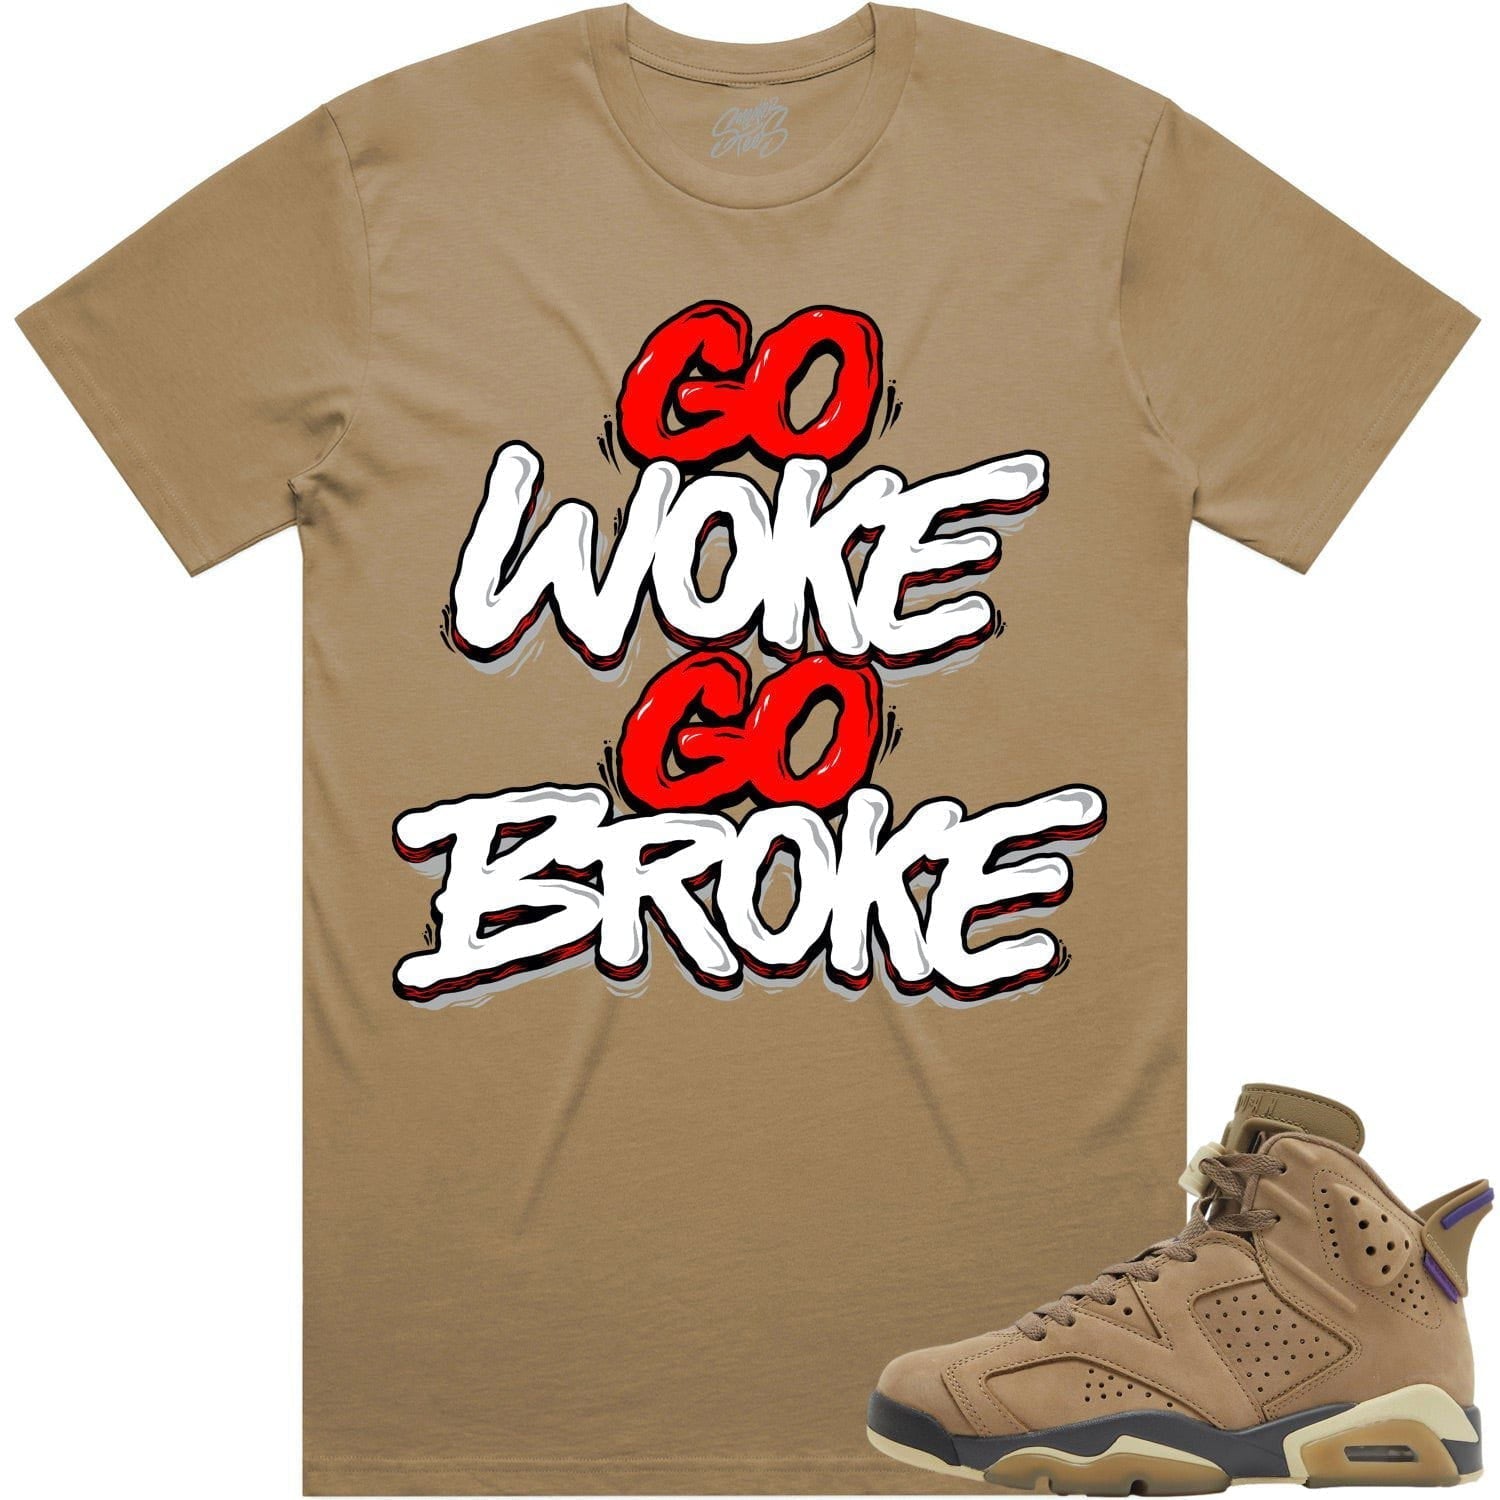 Gore Tex 6s Shirt - Jordan 6 Brown Kelp 6s Sneaker Tees - Woke Broke